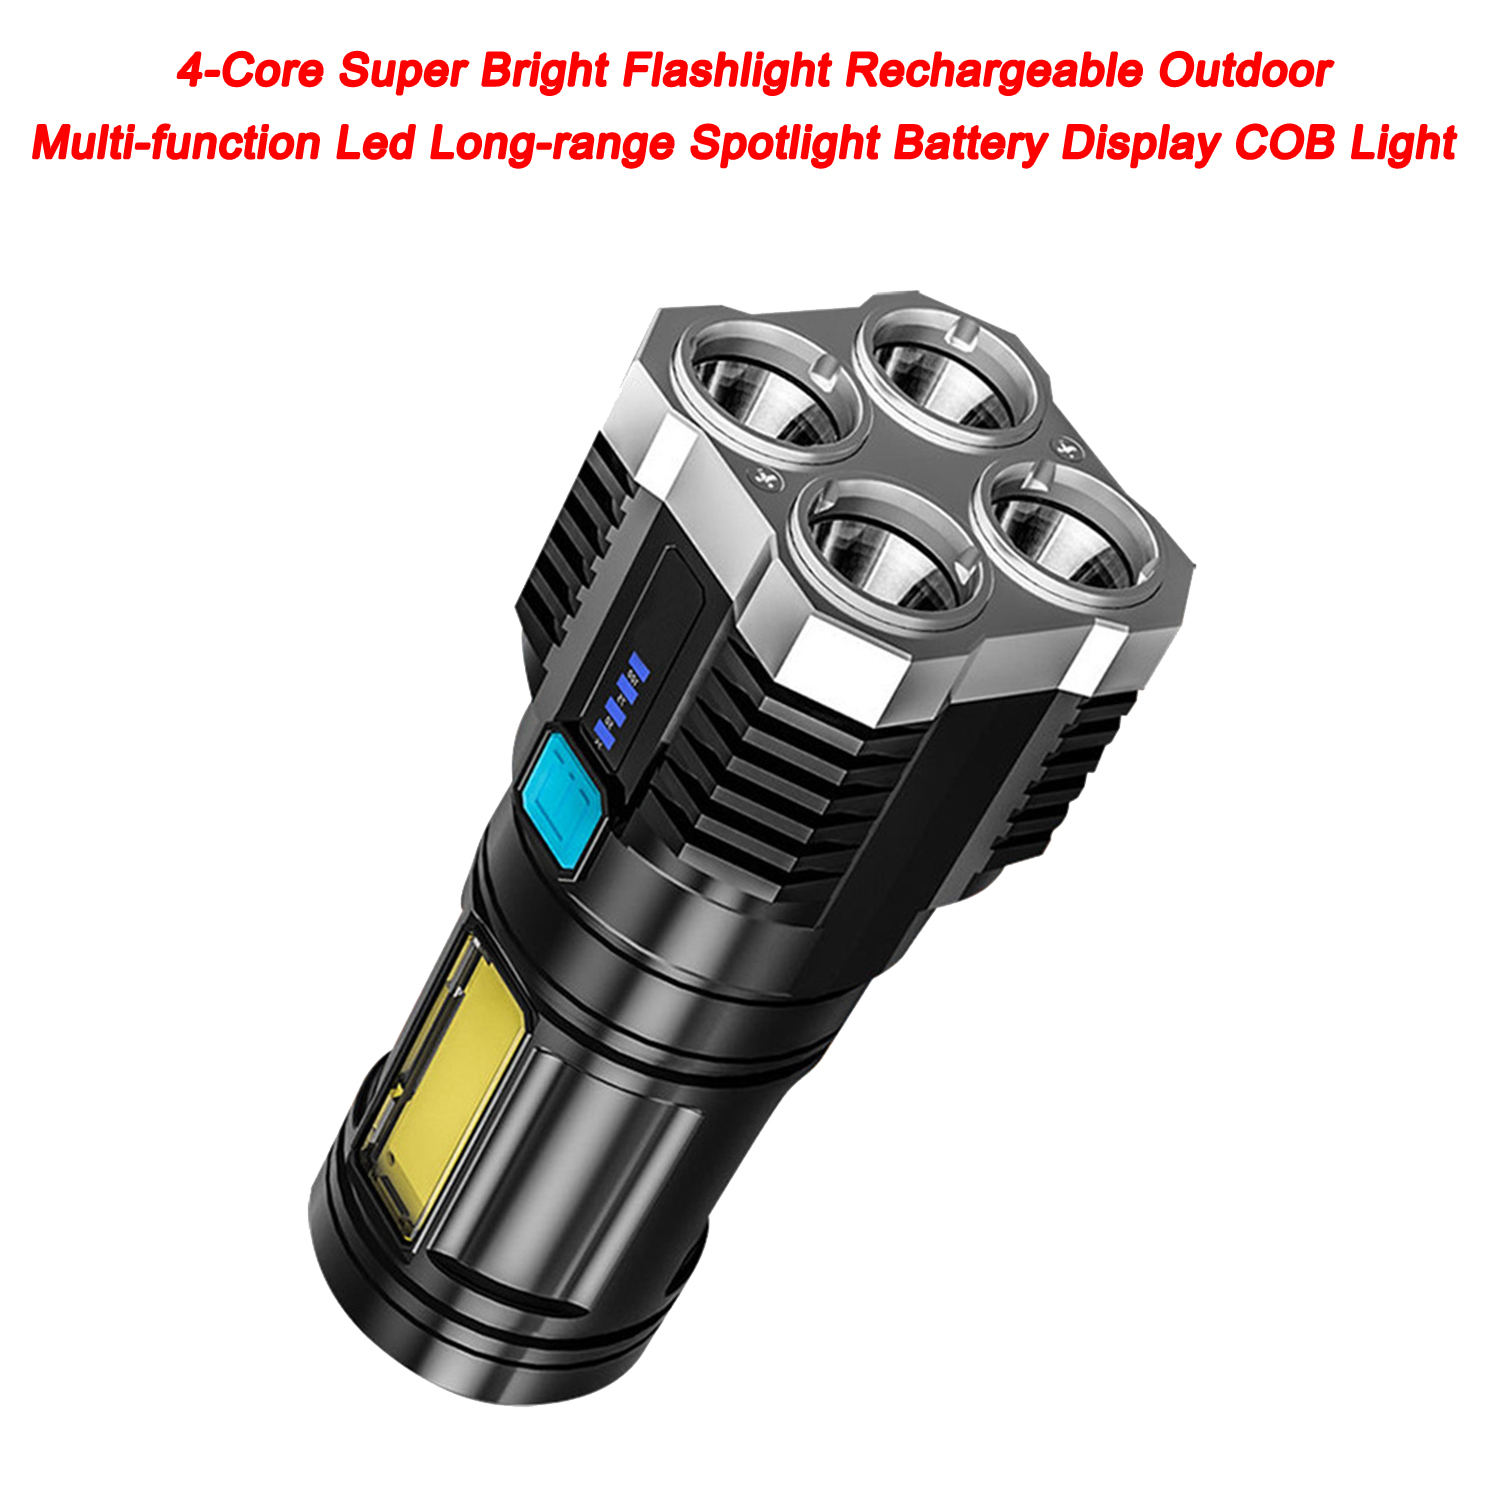 Linterna superbrillante de 4 núcleos, recargable, para exteriores, multifunción, Led, foco de largo alcance, pantalla de batería, luz COB